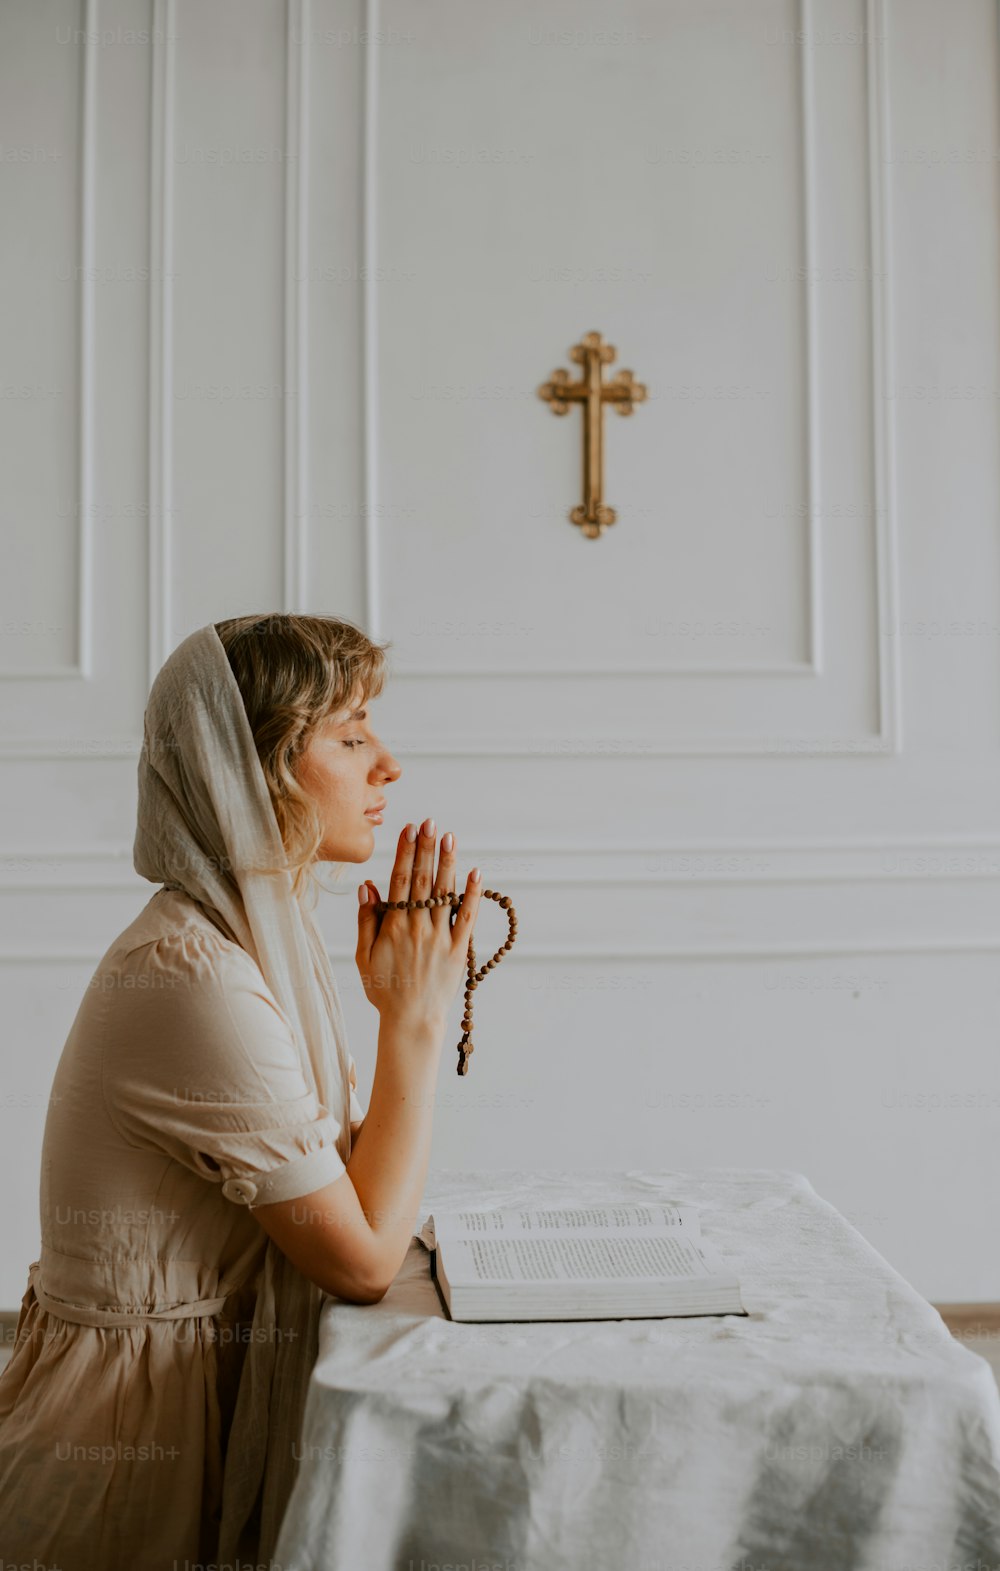 Una mujer sentada en una mesa frente a una cruz